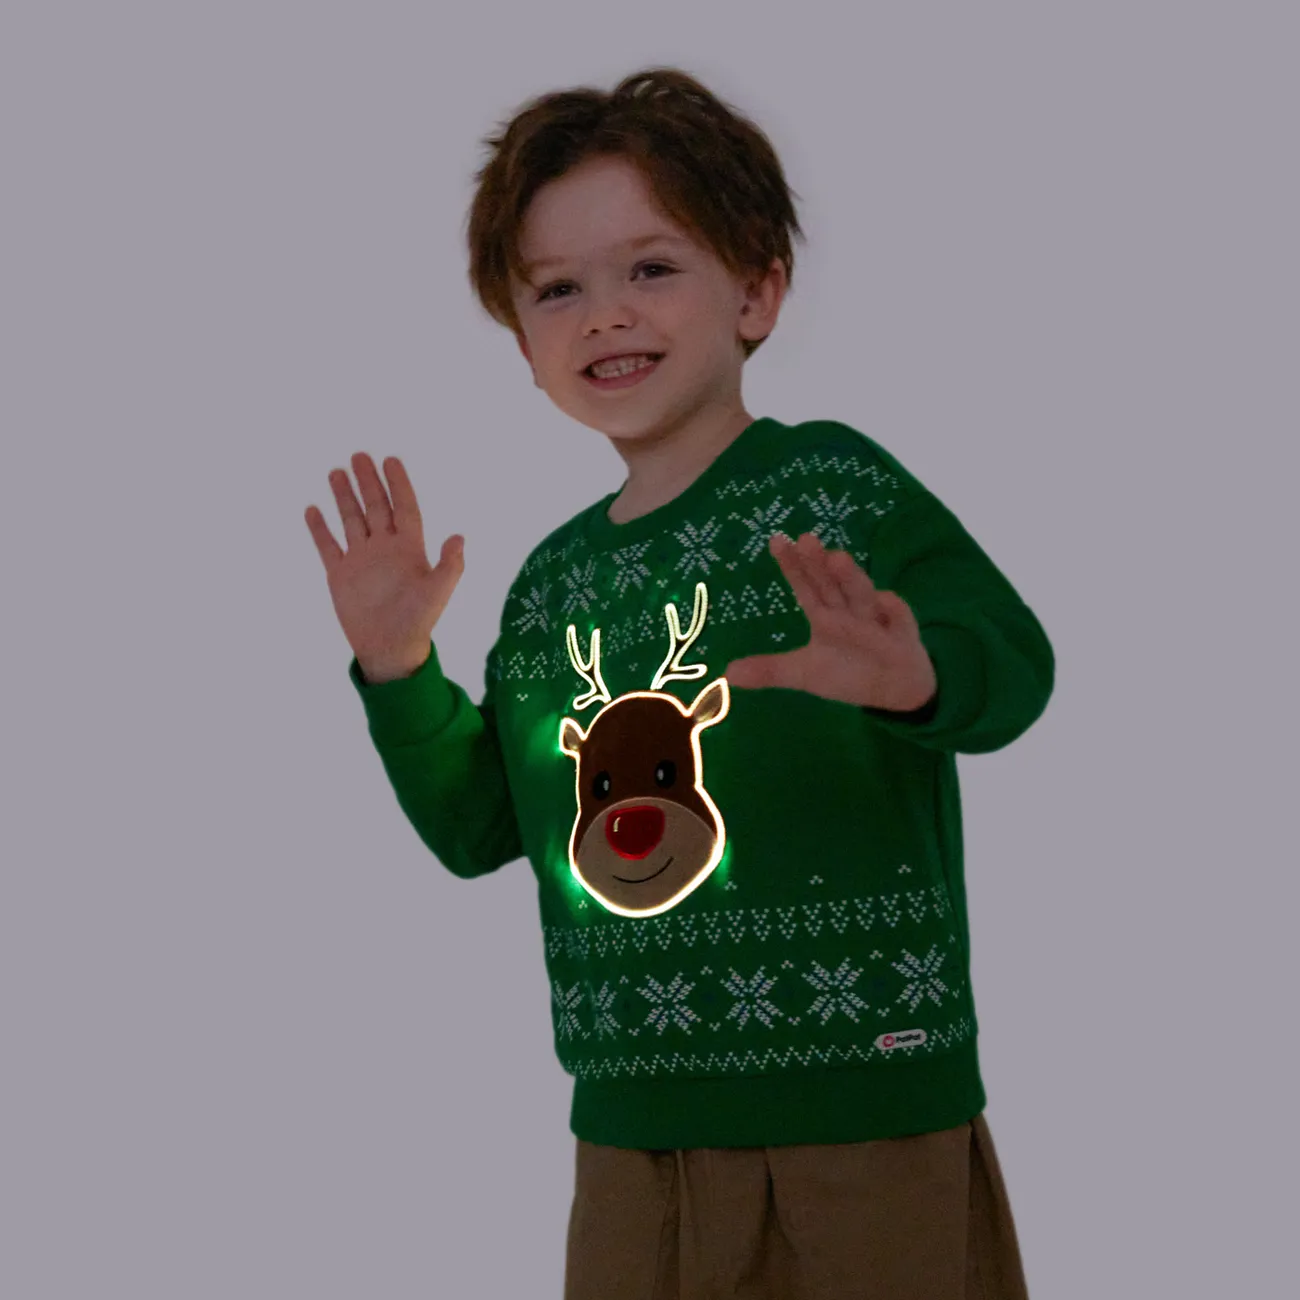 Go-Glow Christmas Illuminating Sweatshirt mit leuchtendem Elch inklusive Controller (eingebauter Akku) grün big image 1